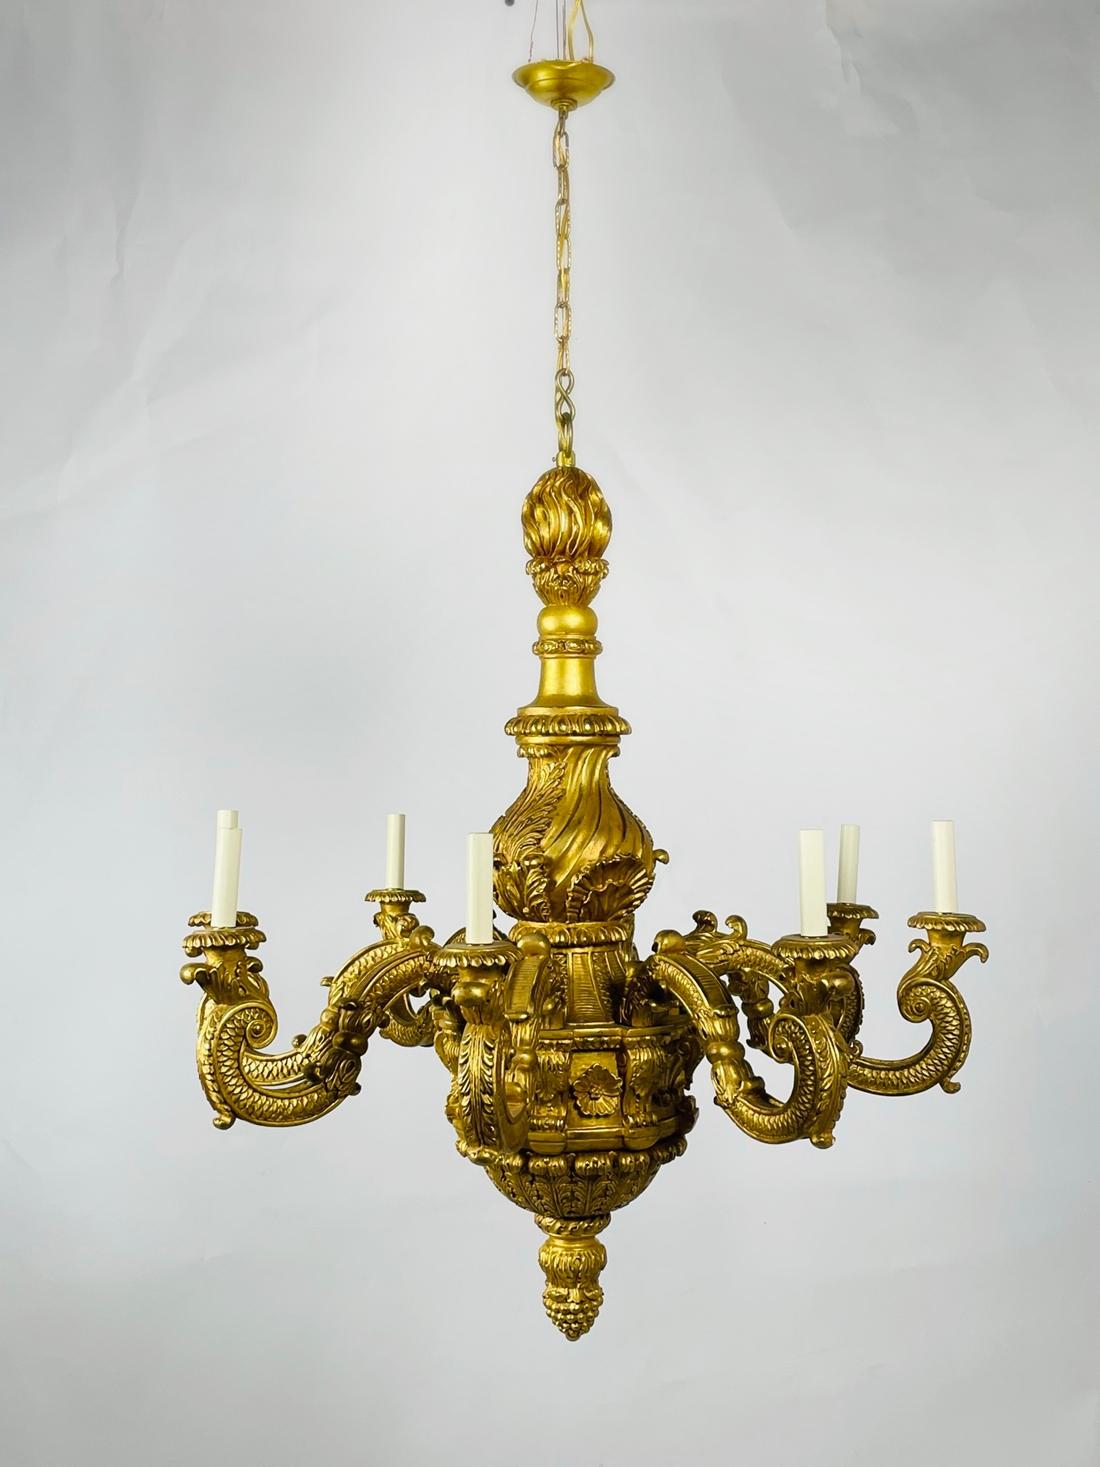 Der geschnitzte Goldholz-Kronleuchter im George-I-Stil von Vaughan Design ist der Inbegriff von Luxus und Eleganz. 

Dieser atemberaubende Kronleuchter mit seinen kunstvollen Schnitzereien und der königlichen Krone ist ein wahres Schmuckstück für